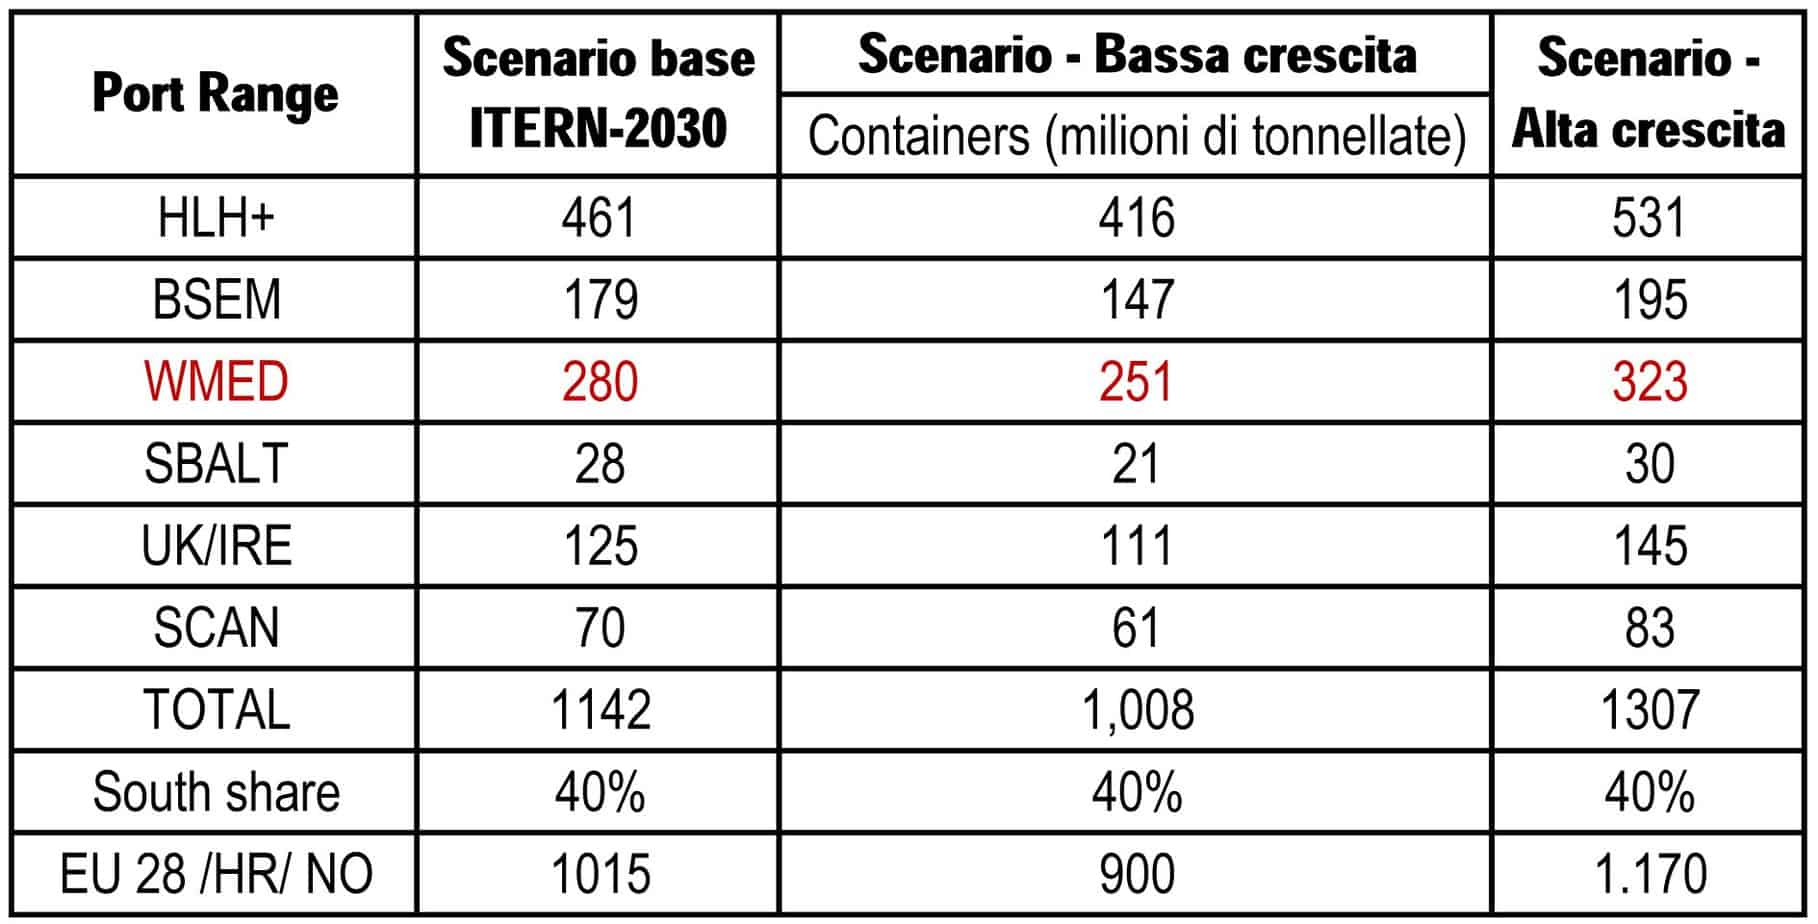 La previsione e il confronto fra gli scenari del traffico container nei Port Range